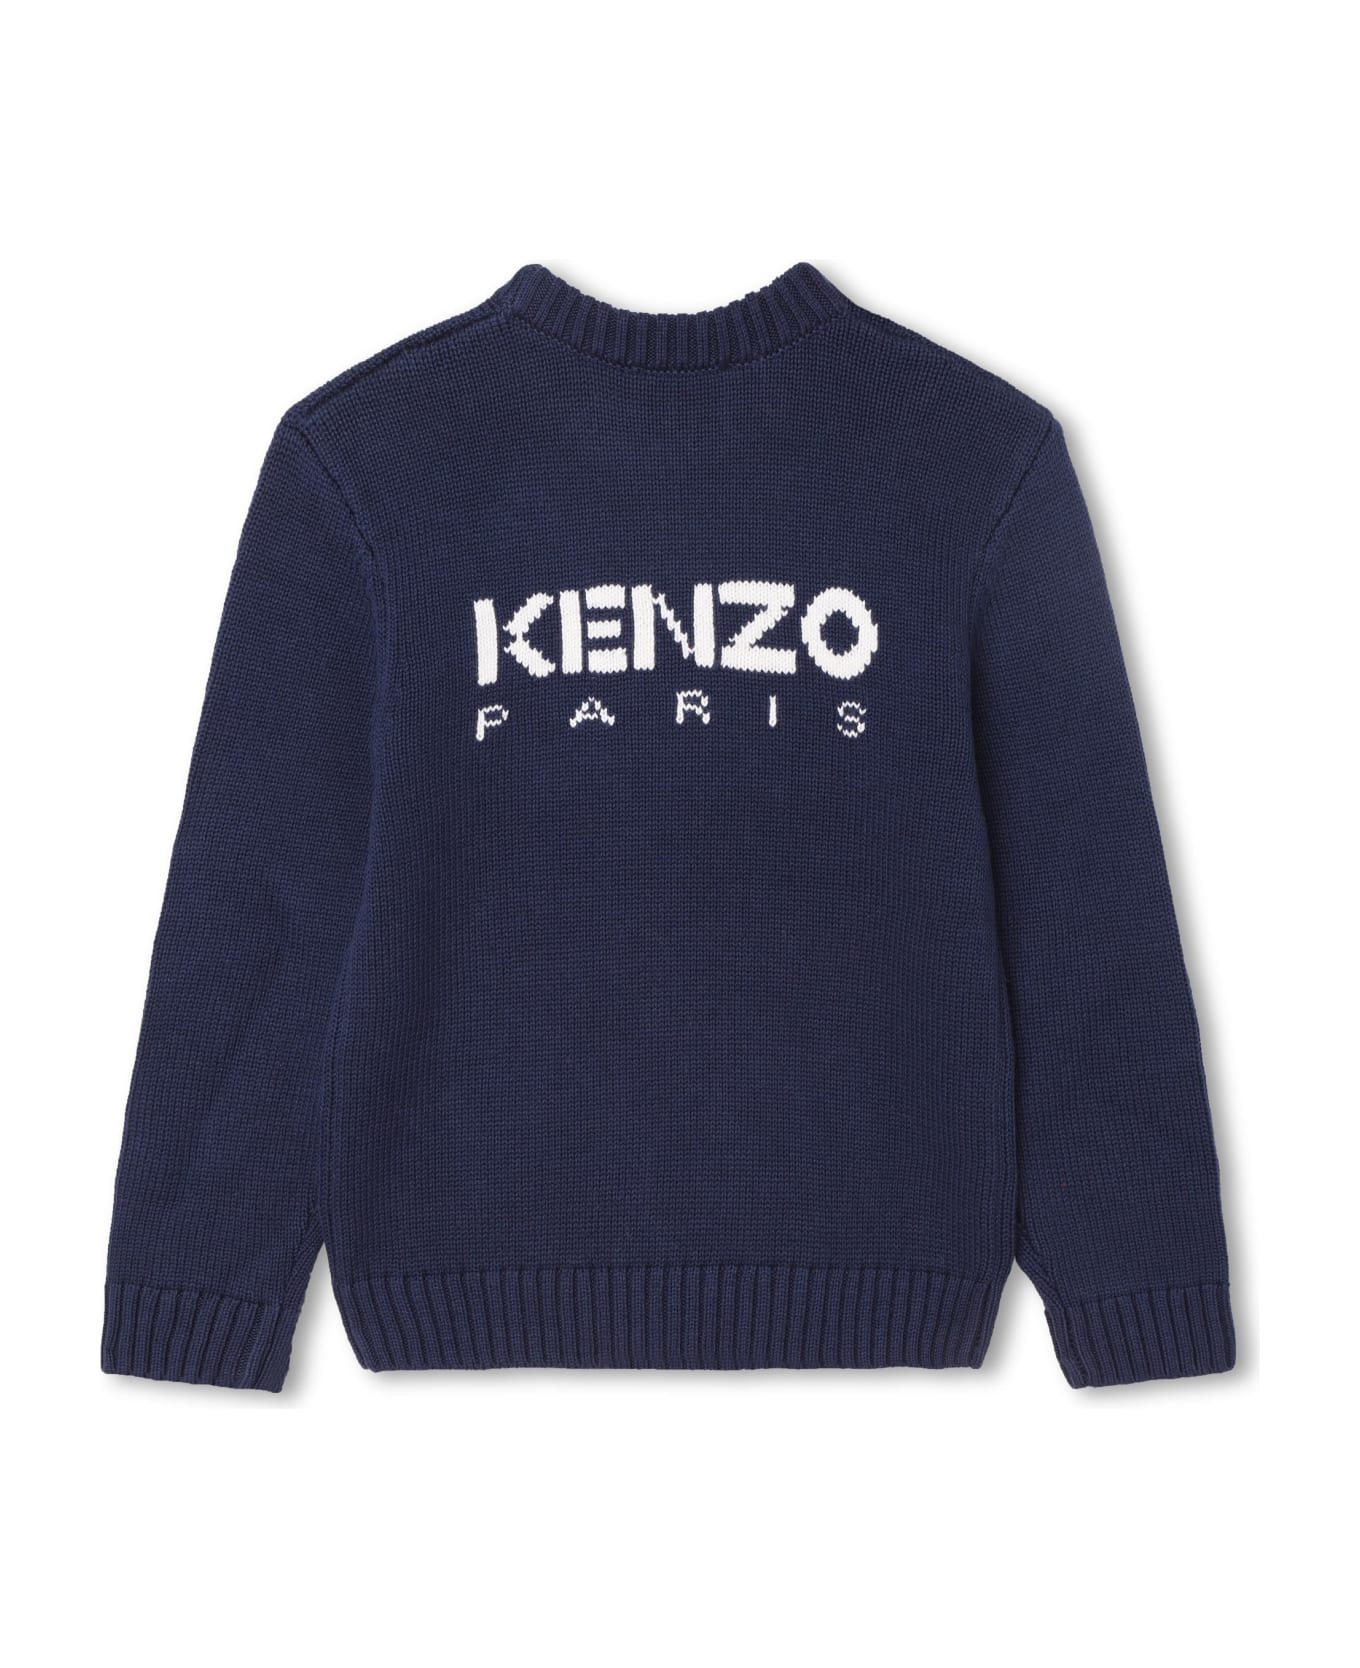 Kenzo Kids Sweatshirt With Inlay - NAVY